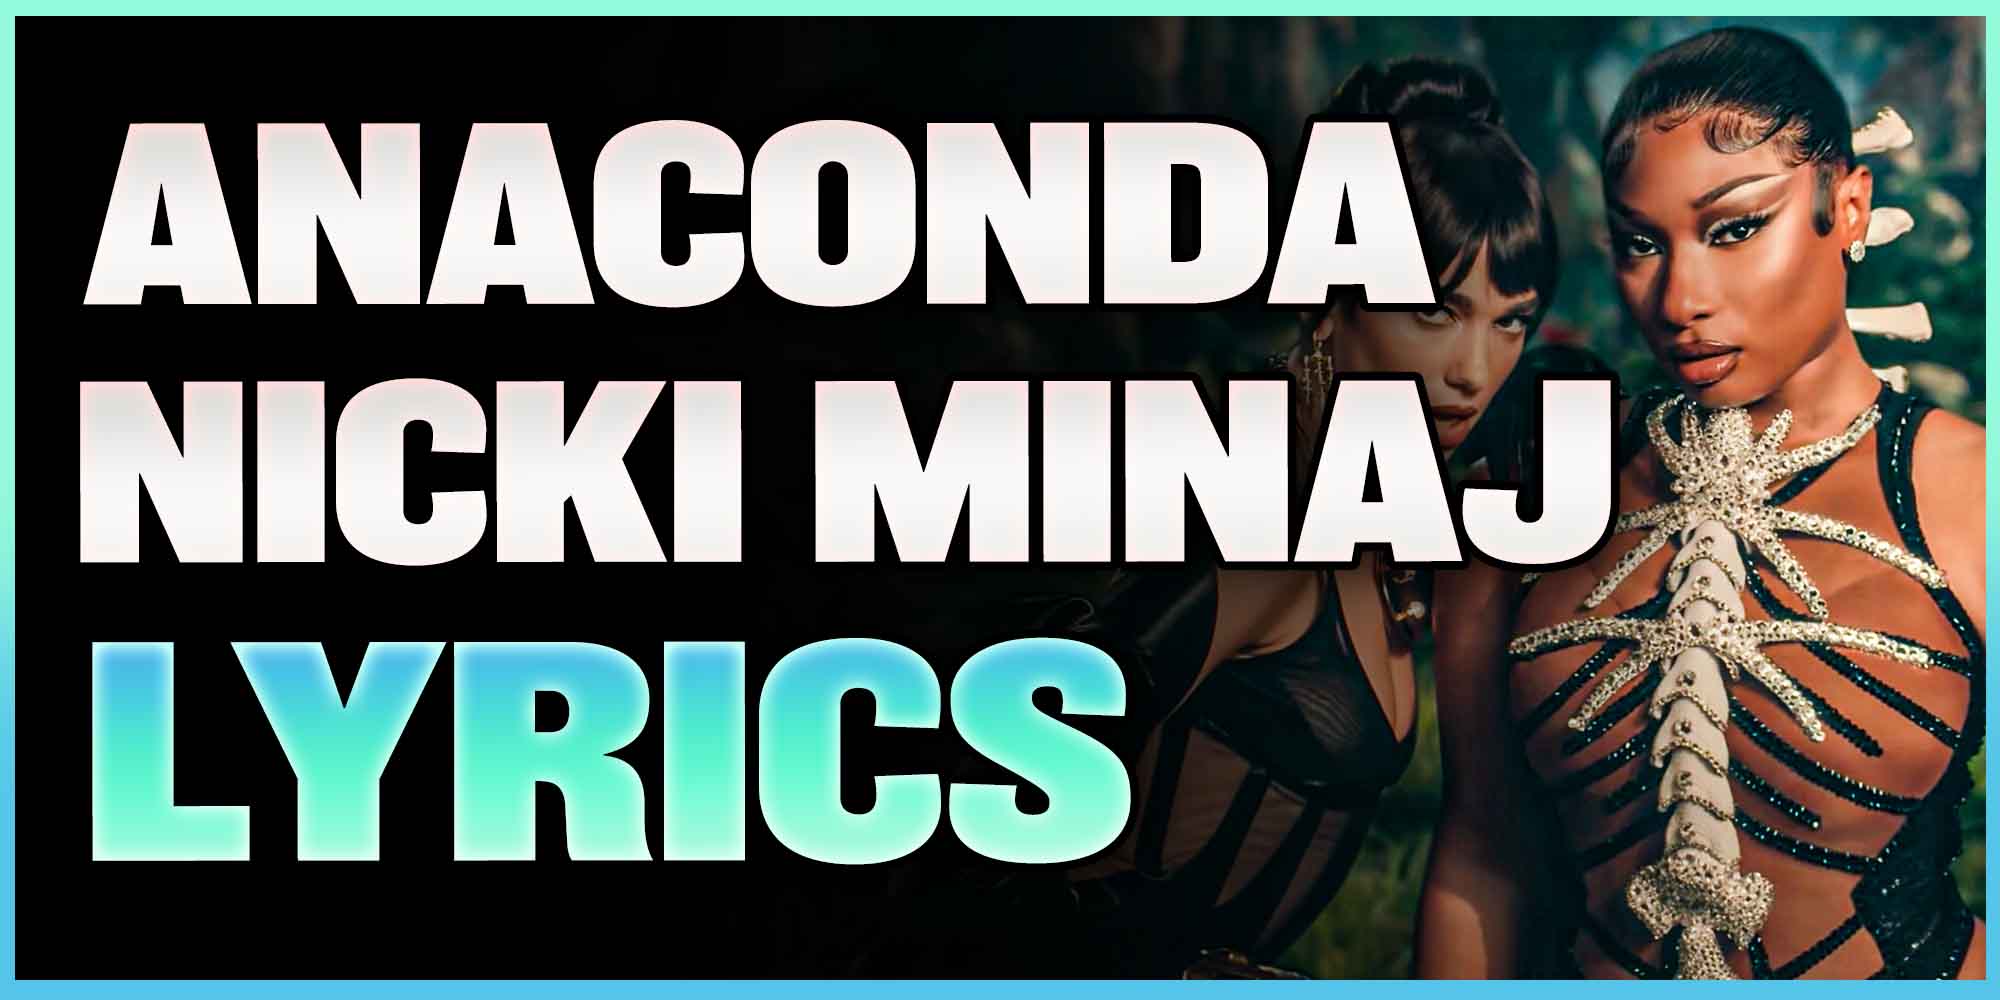 Anaconda Nicki Minaj Lyrics